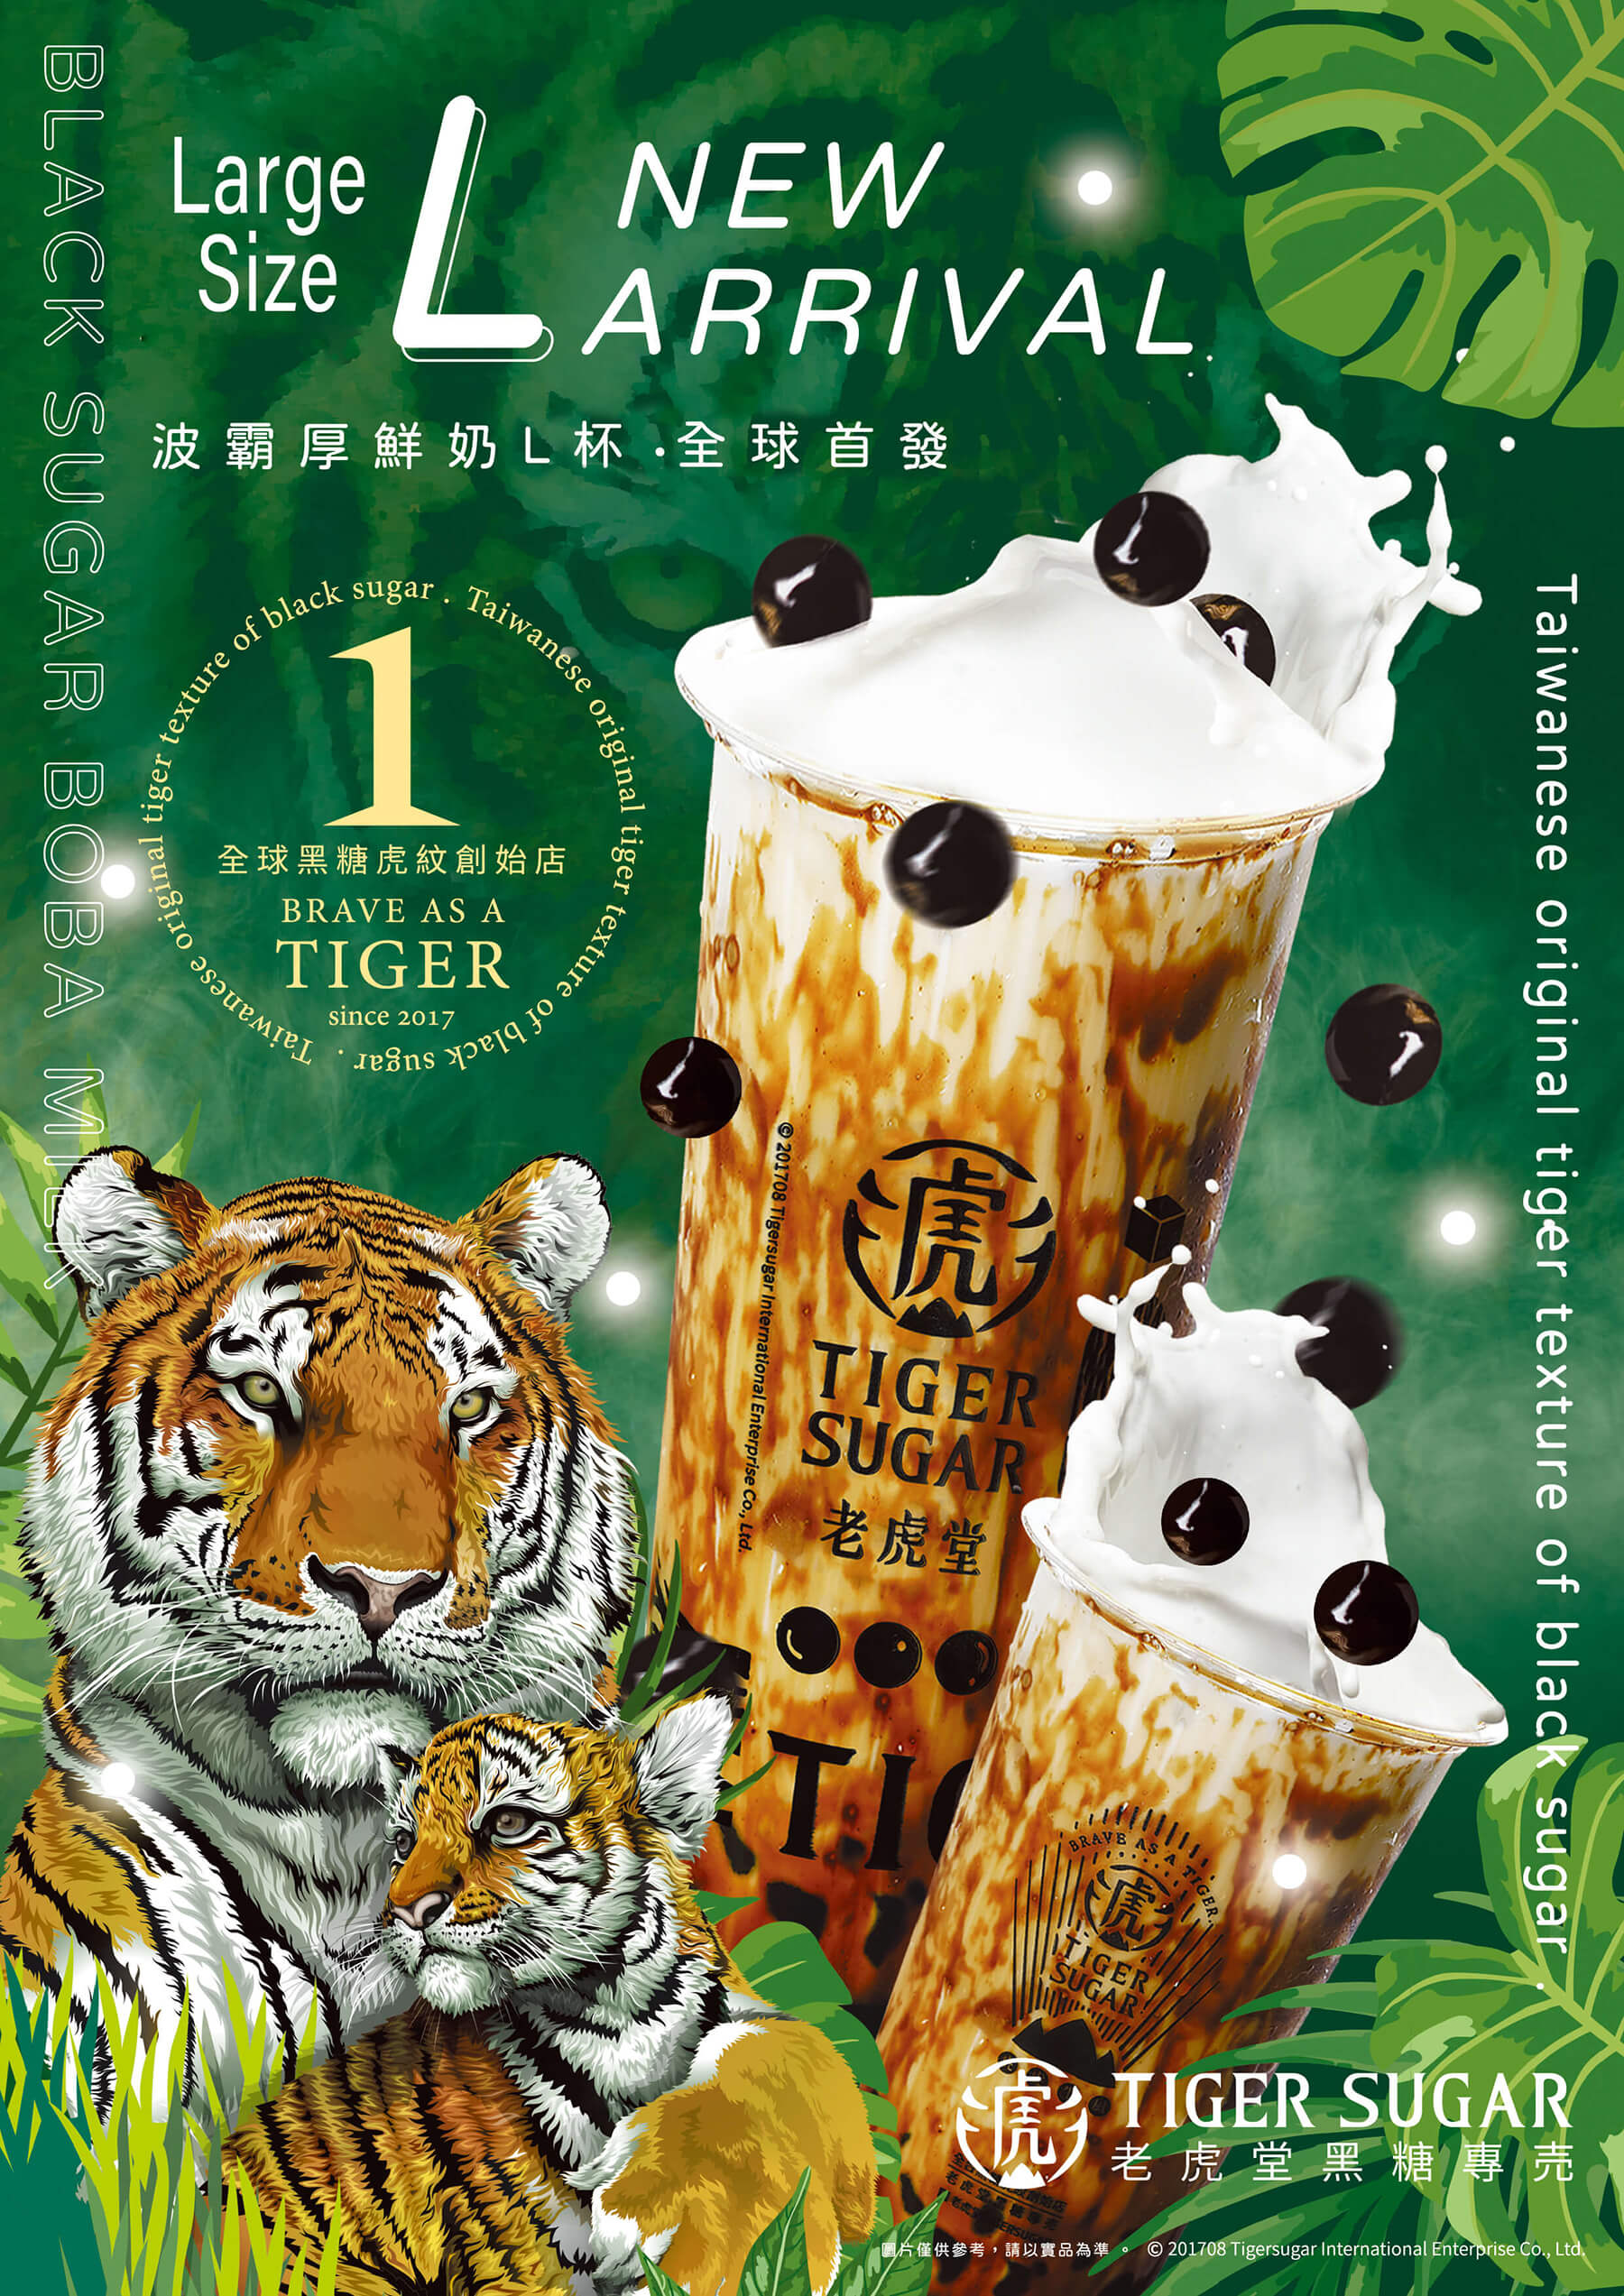 Tiger Sugar